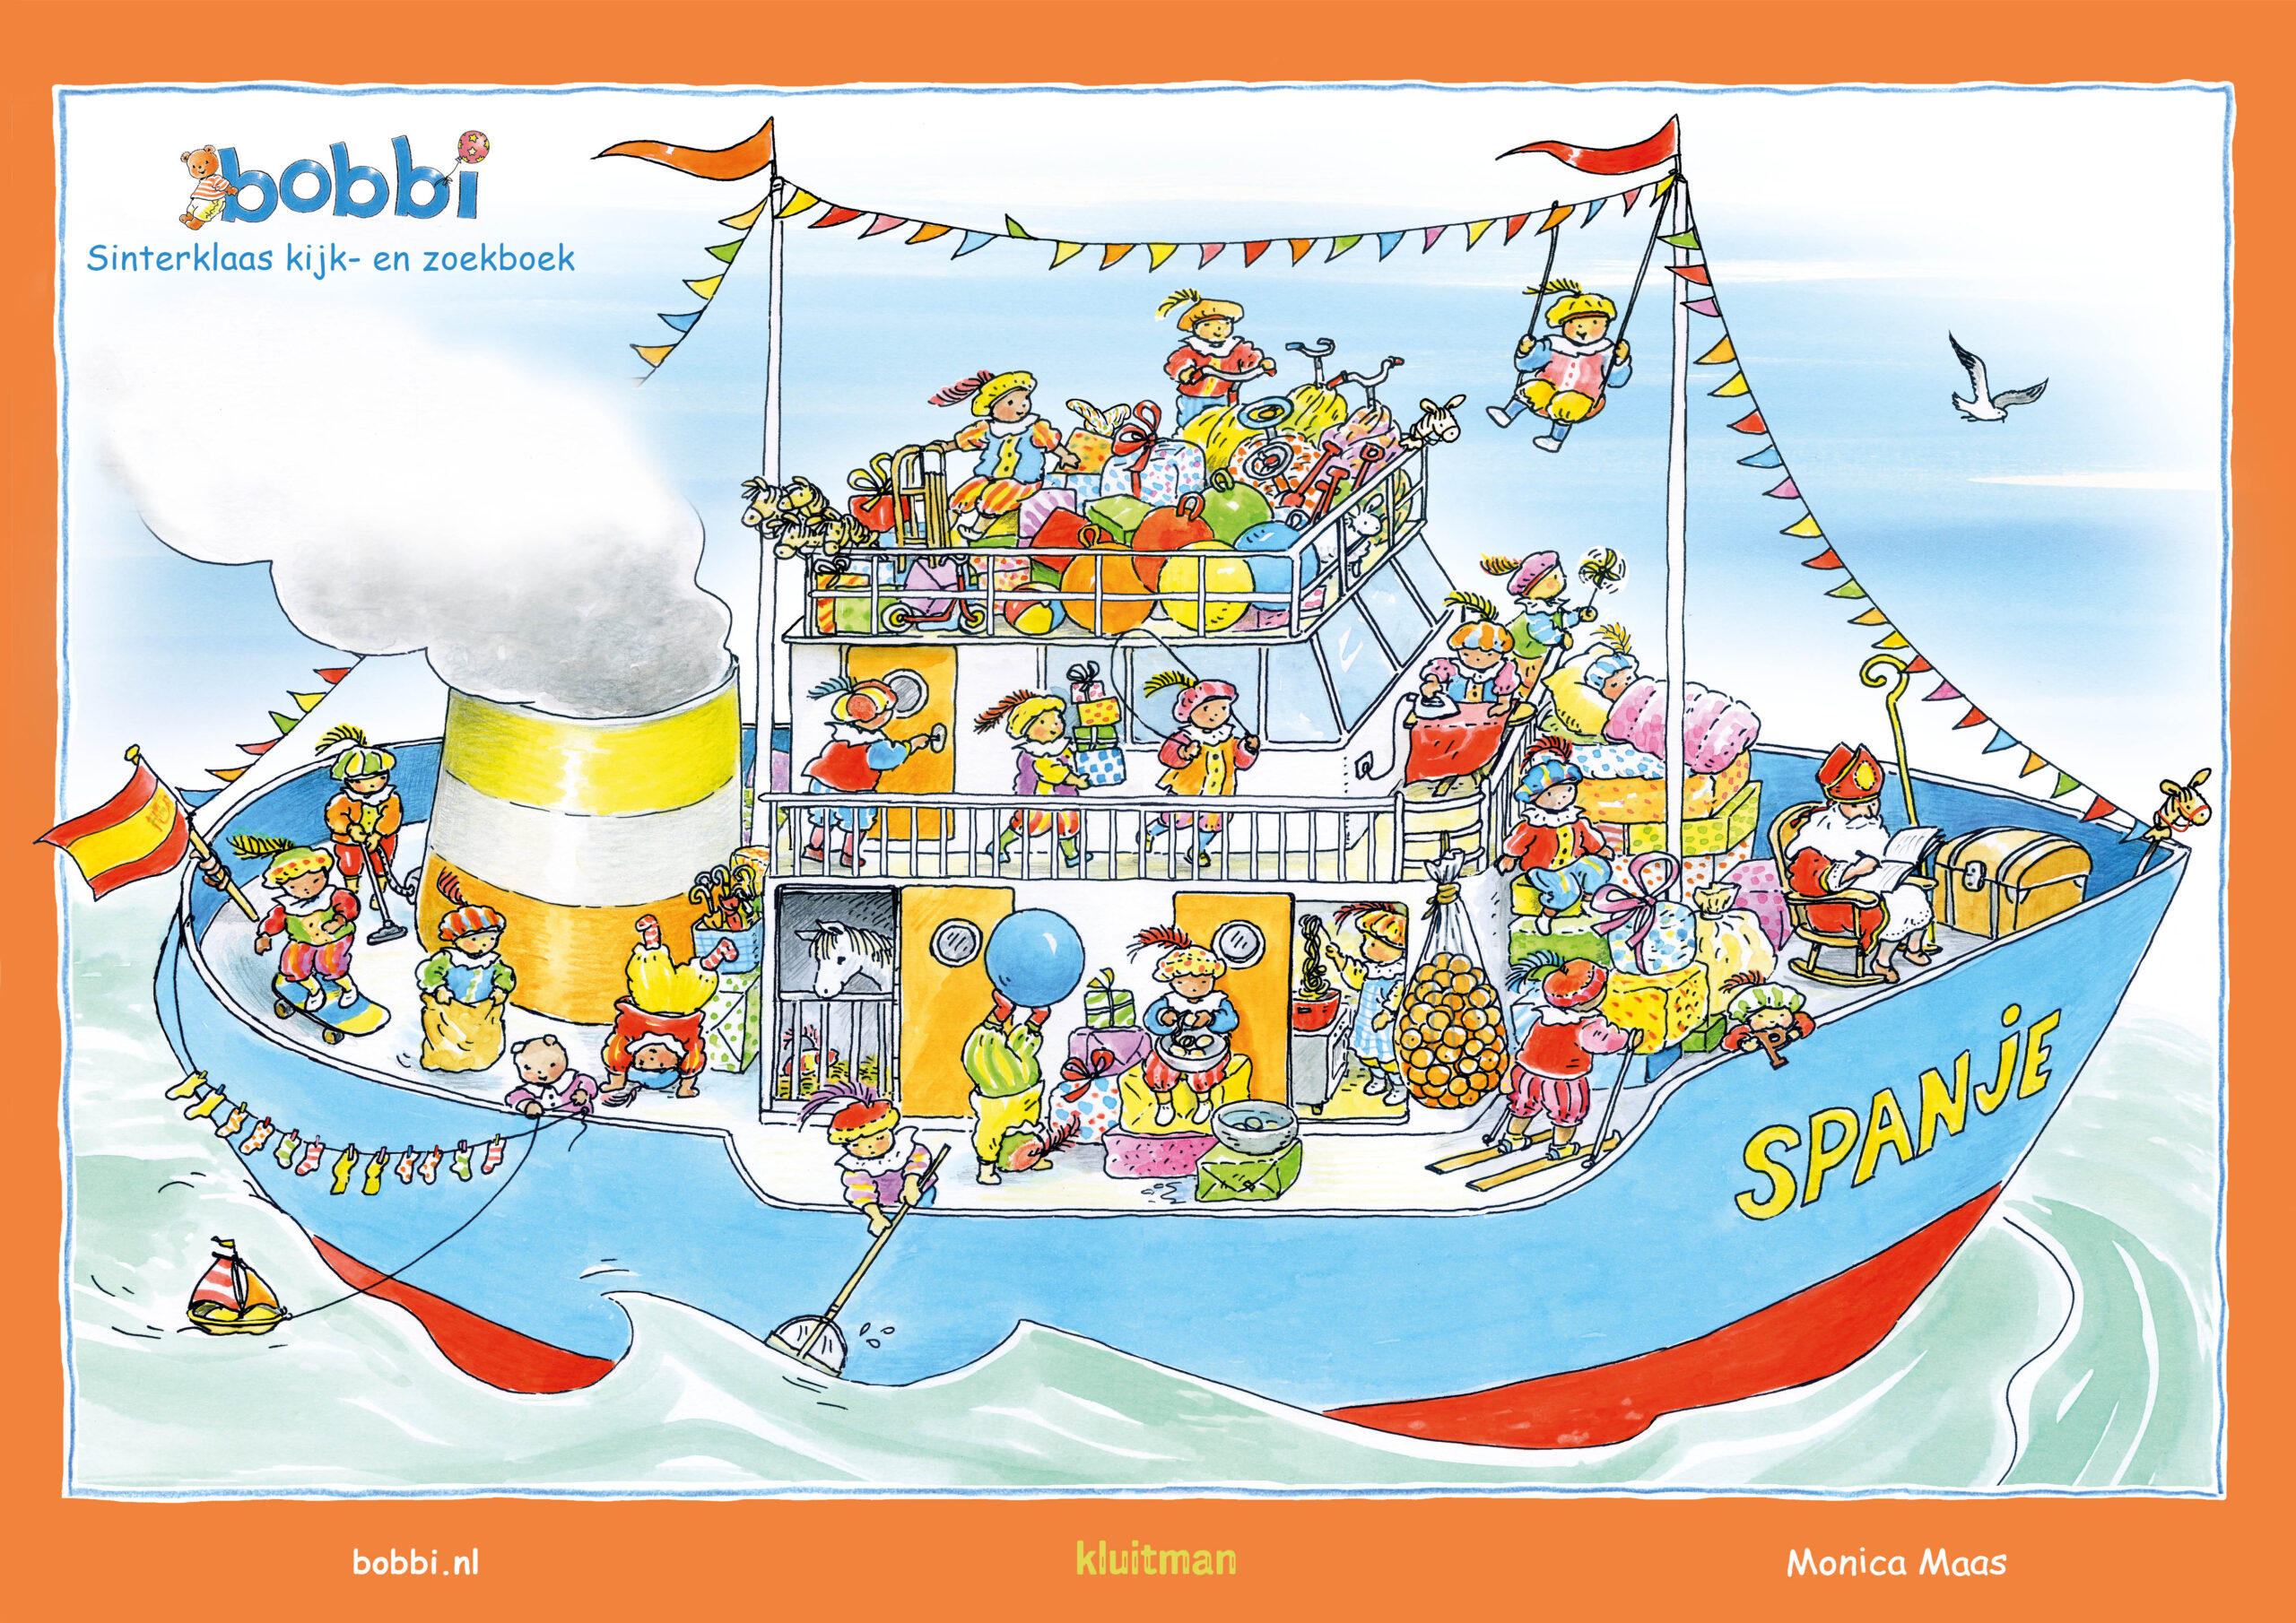 Computerspelletjes spelen cliënt Makkelijk in de omgang Download drie posters uit het Sinterklaas kijk- en zoekboek - Bobbi  kinderboeken - Vrolijke boeken voor peuters